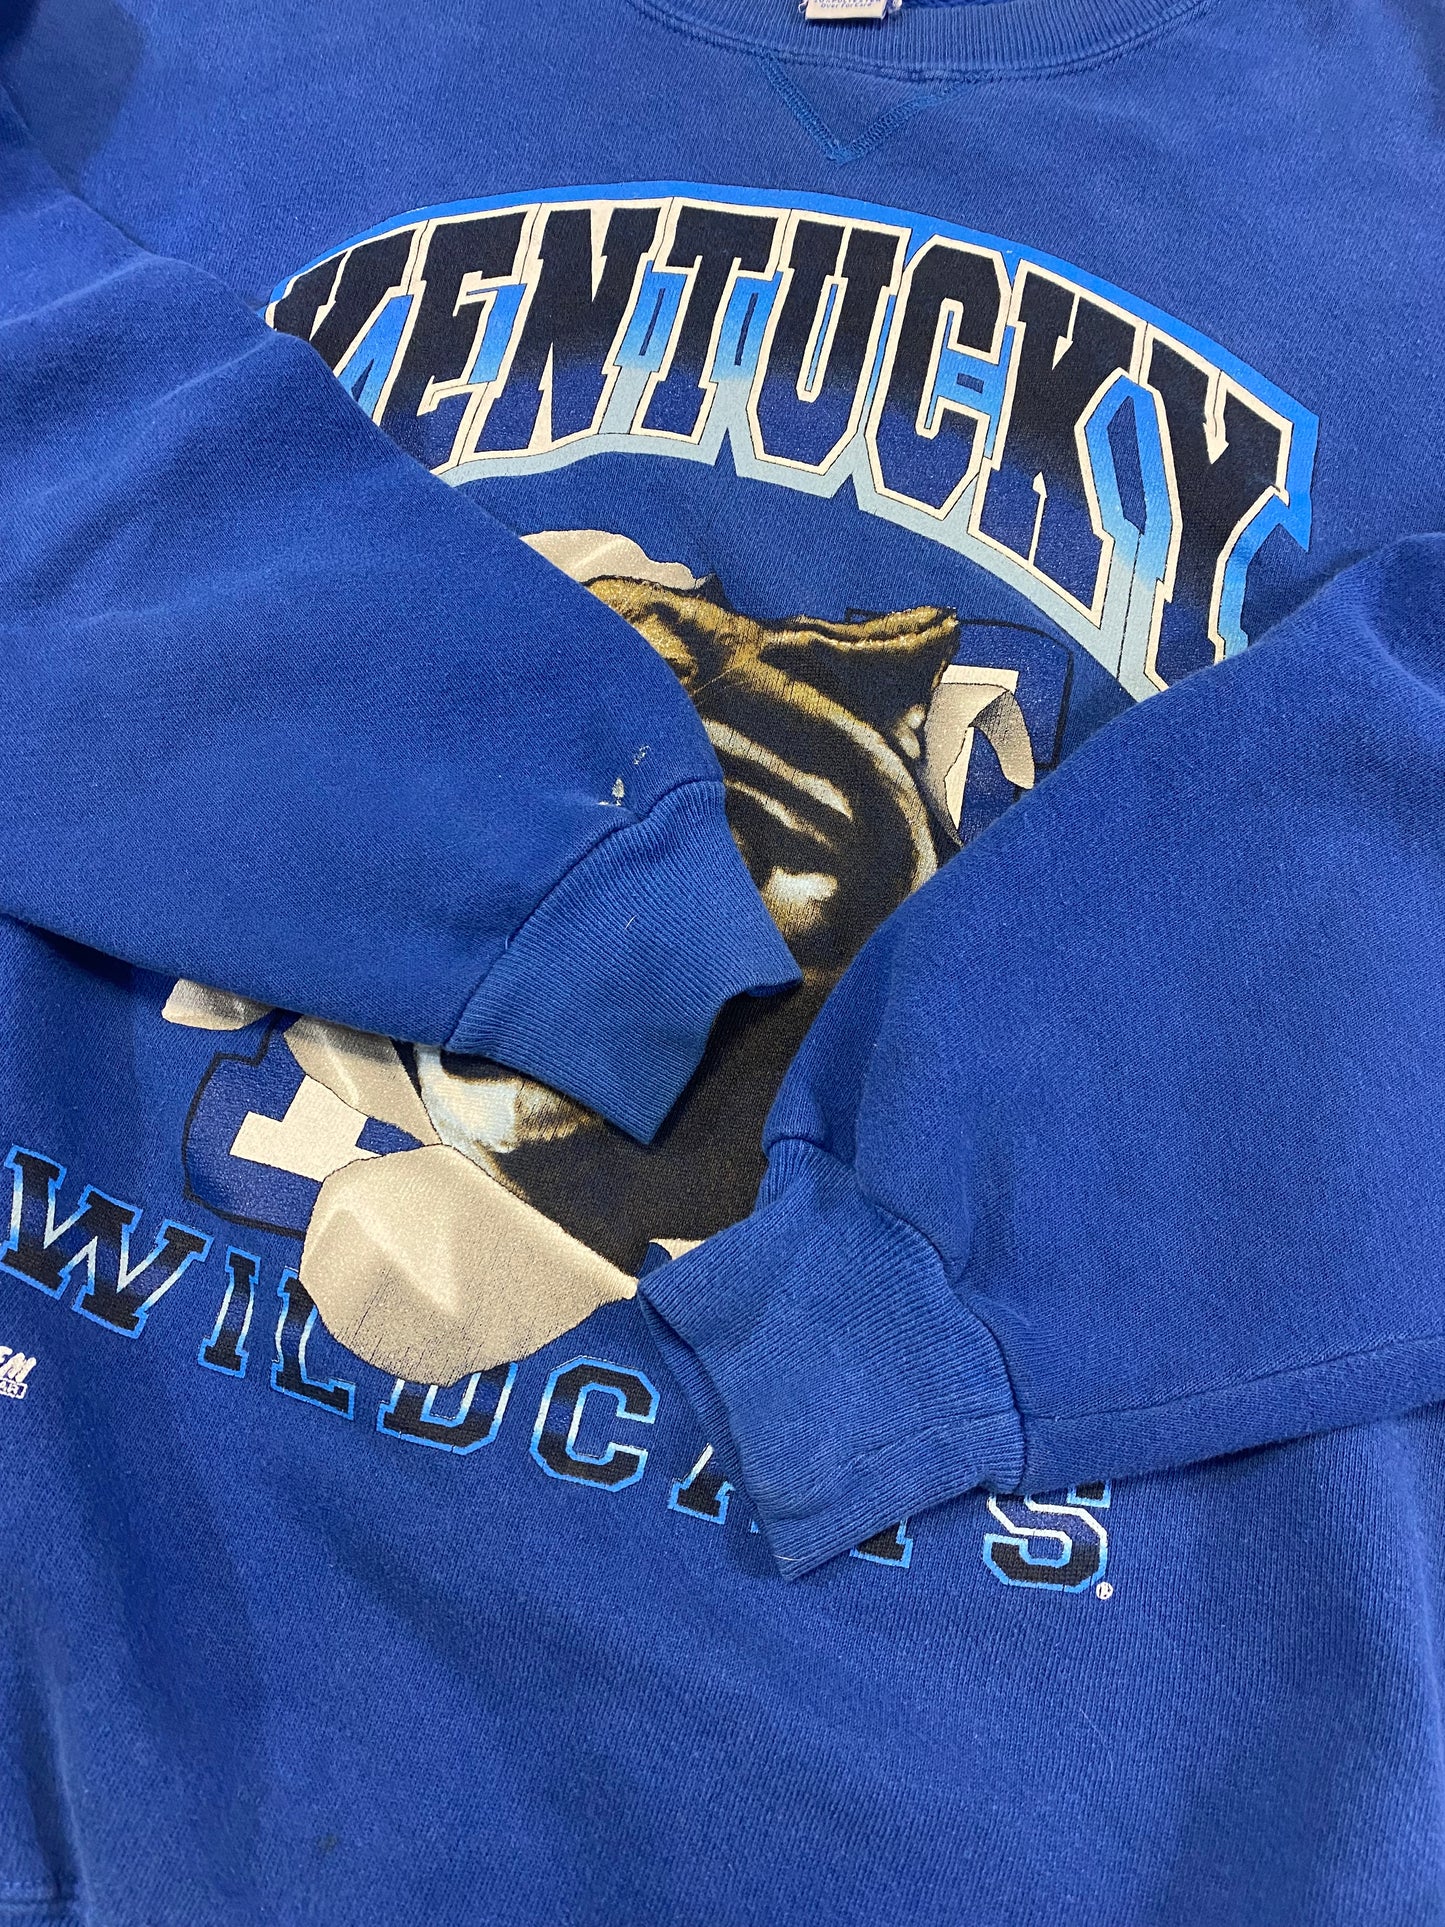 1990’s Kentucky Wildcats Salem Sportswear Sweatshirt L